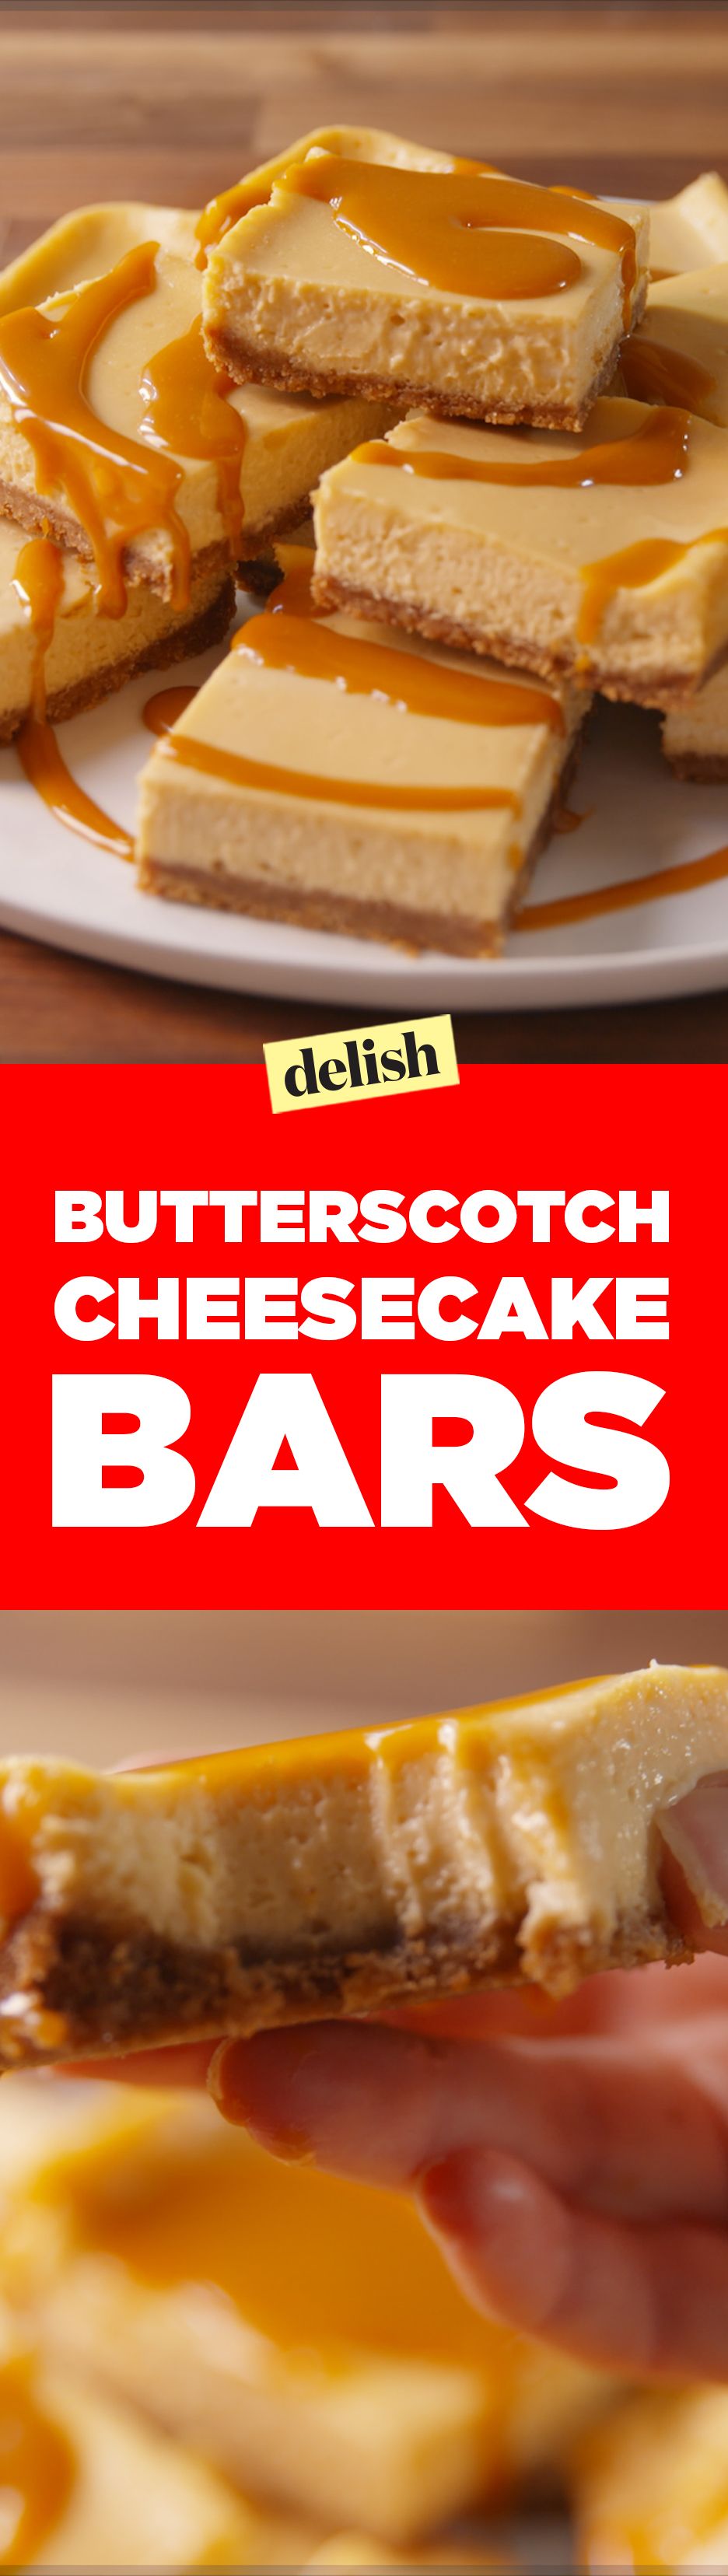 Butterscotch Cheesecake Bars Pinterest